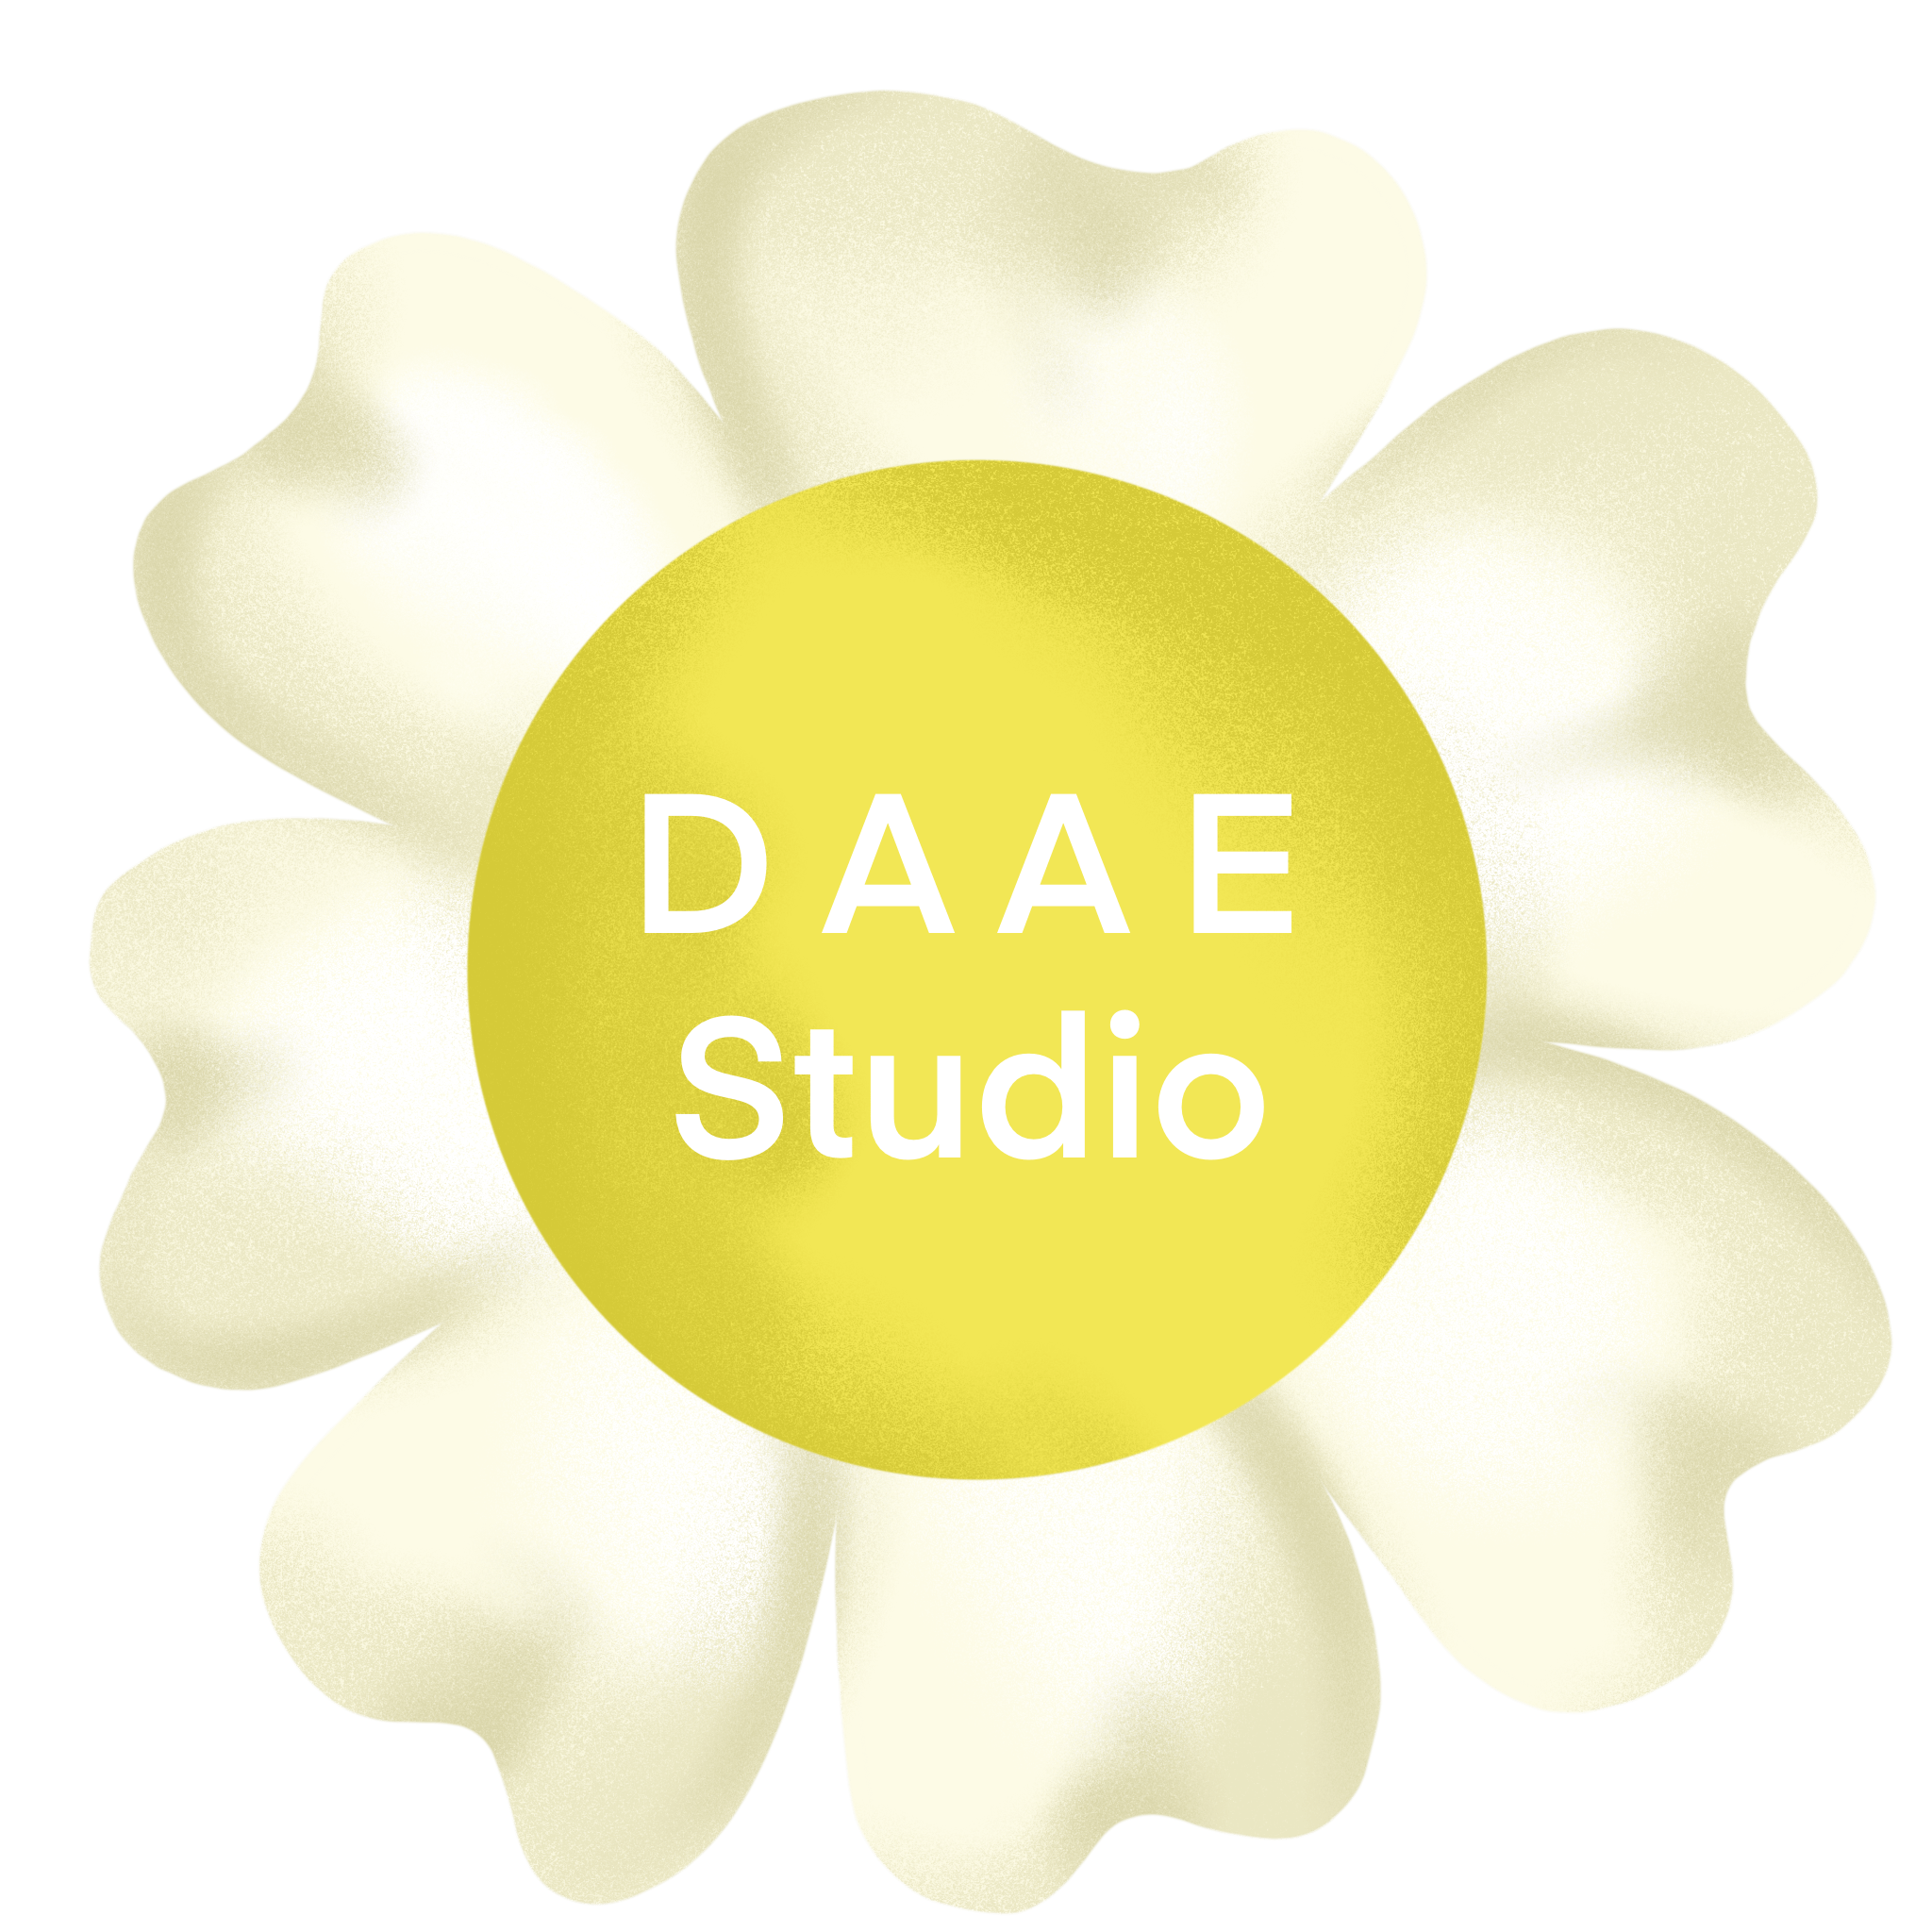 DAAE Studio